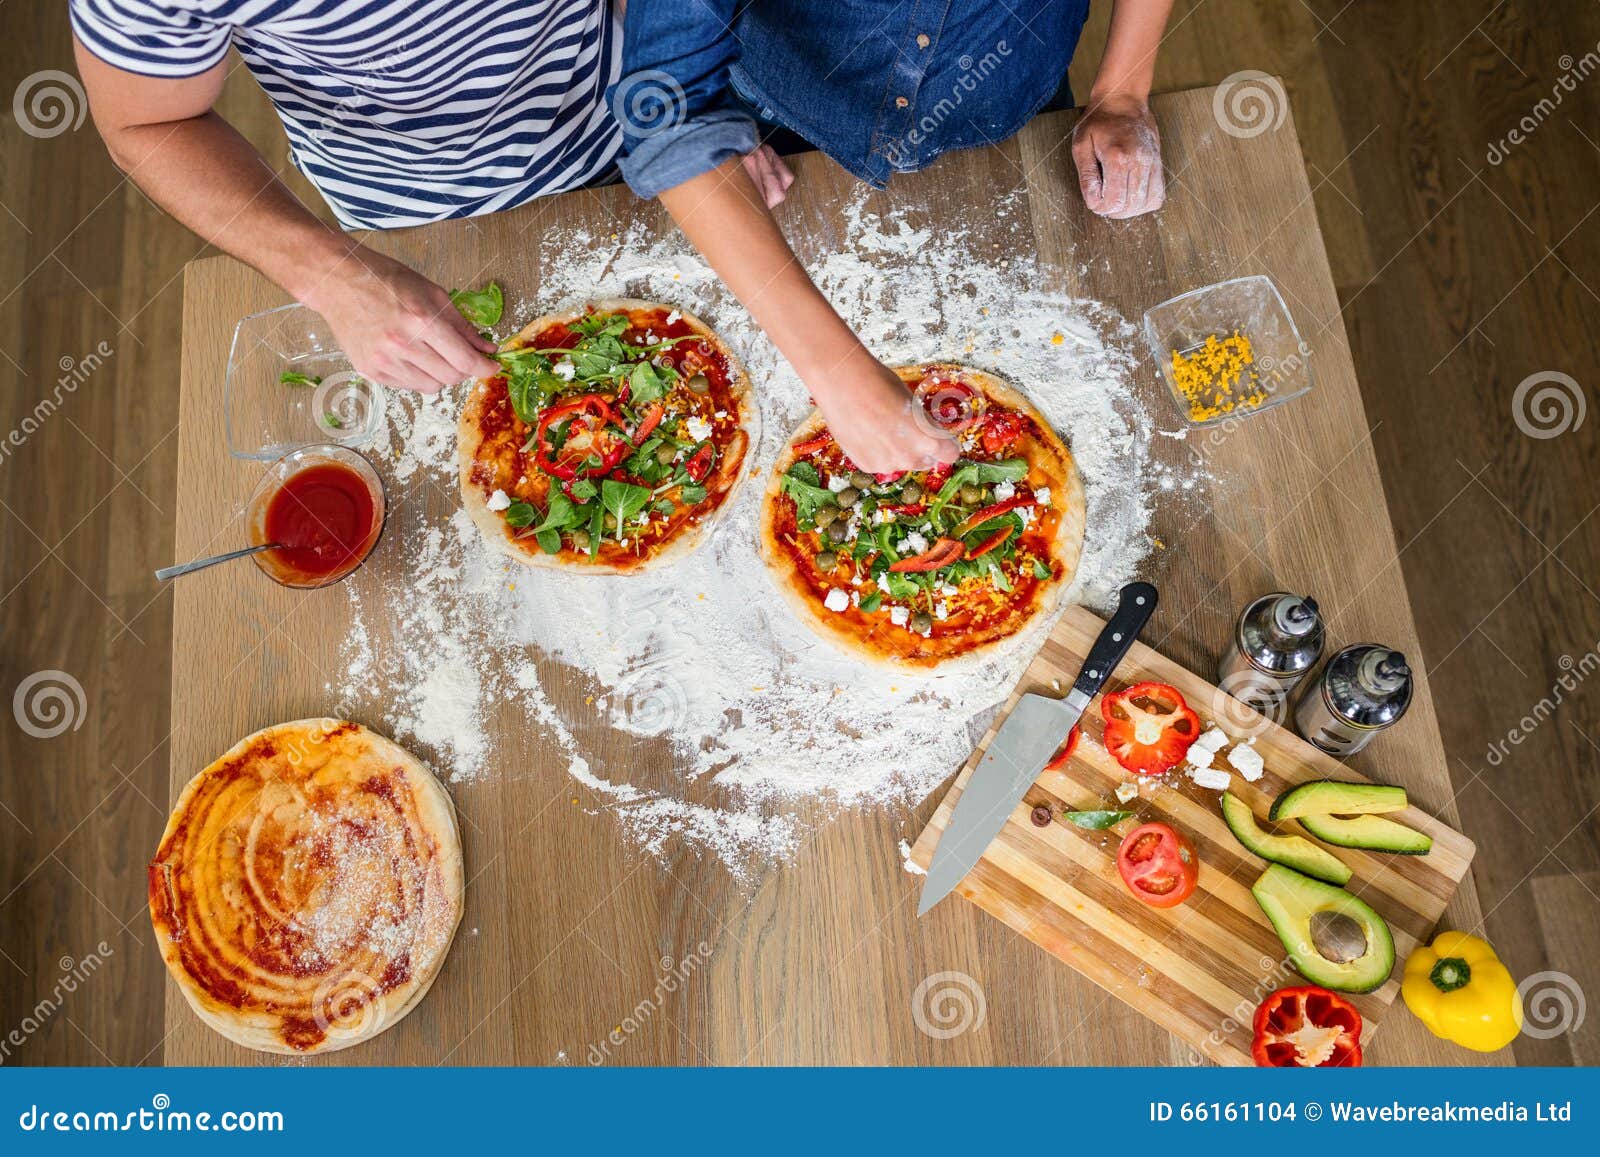 цыганка готовит пиццу рецепт фото 79